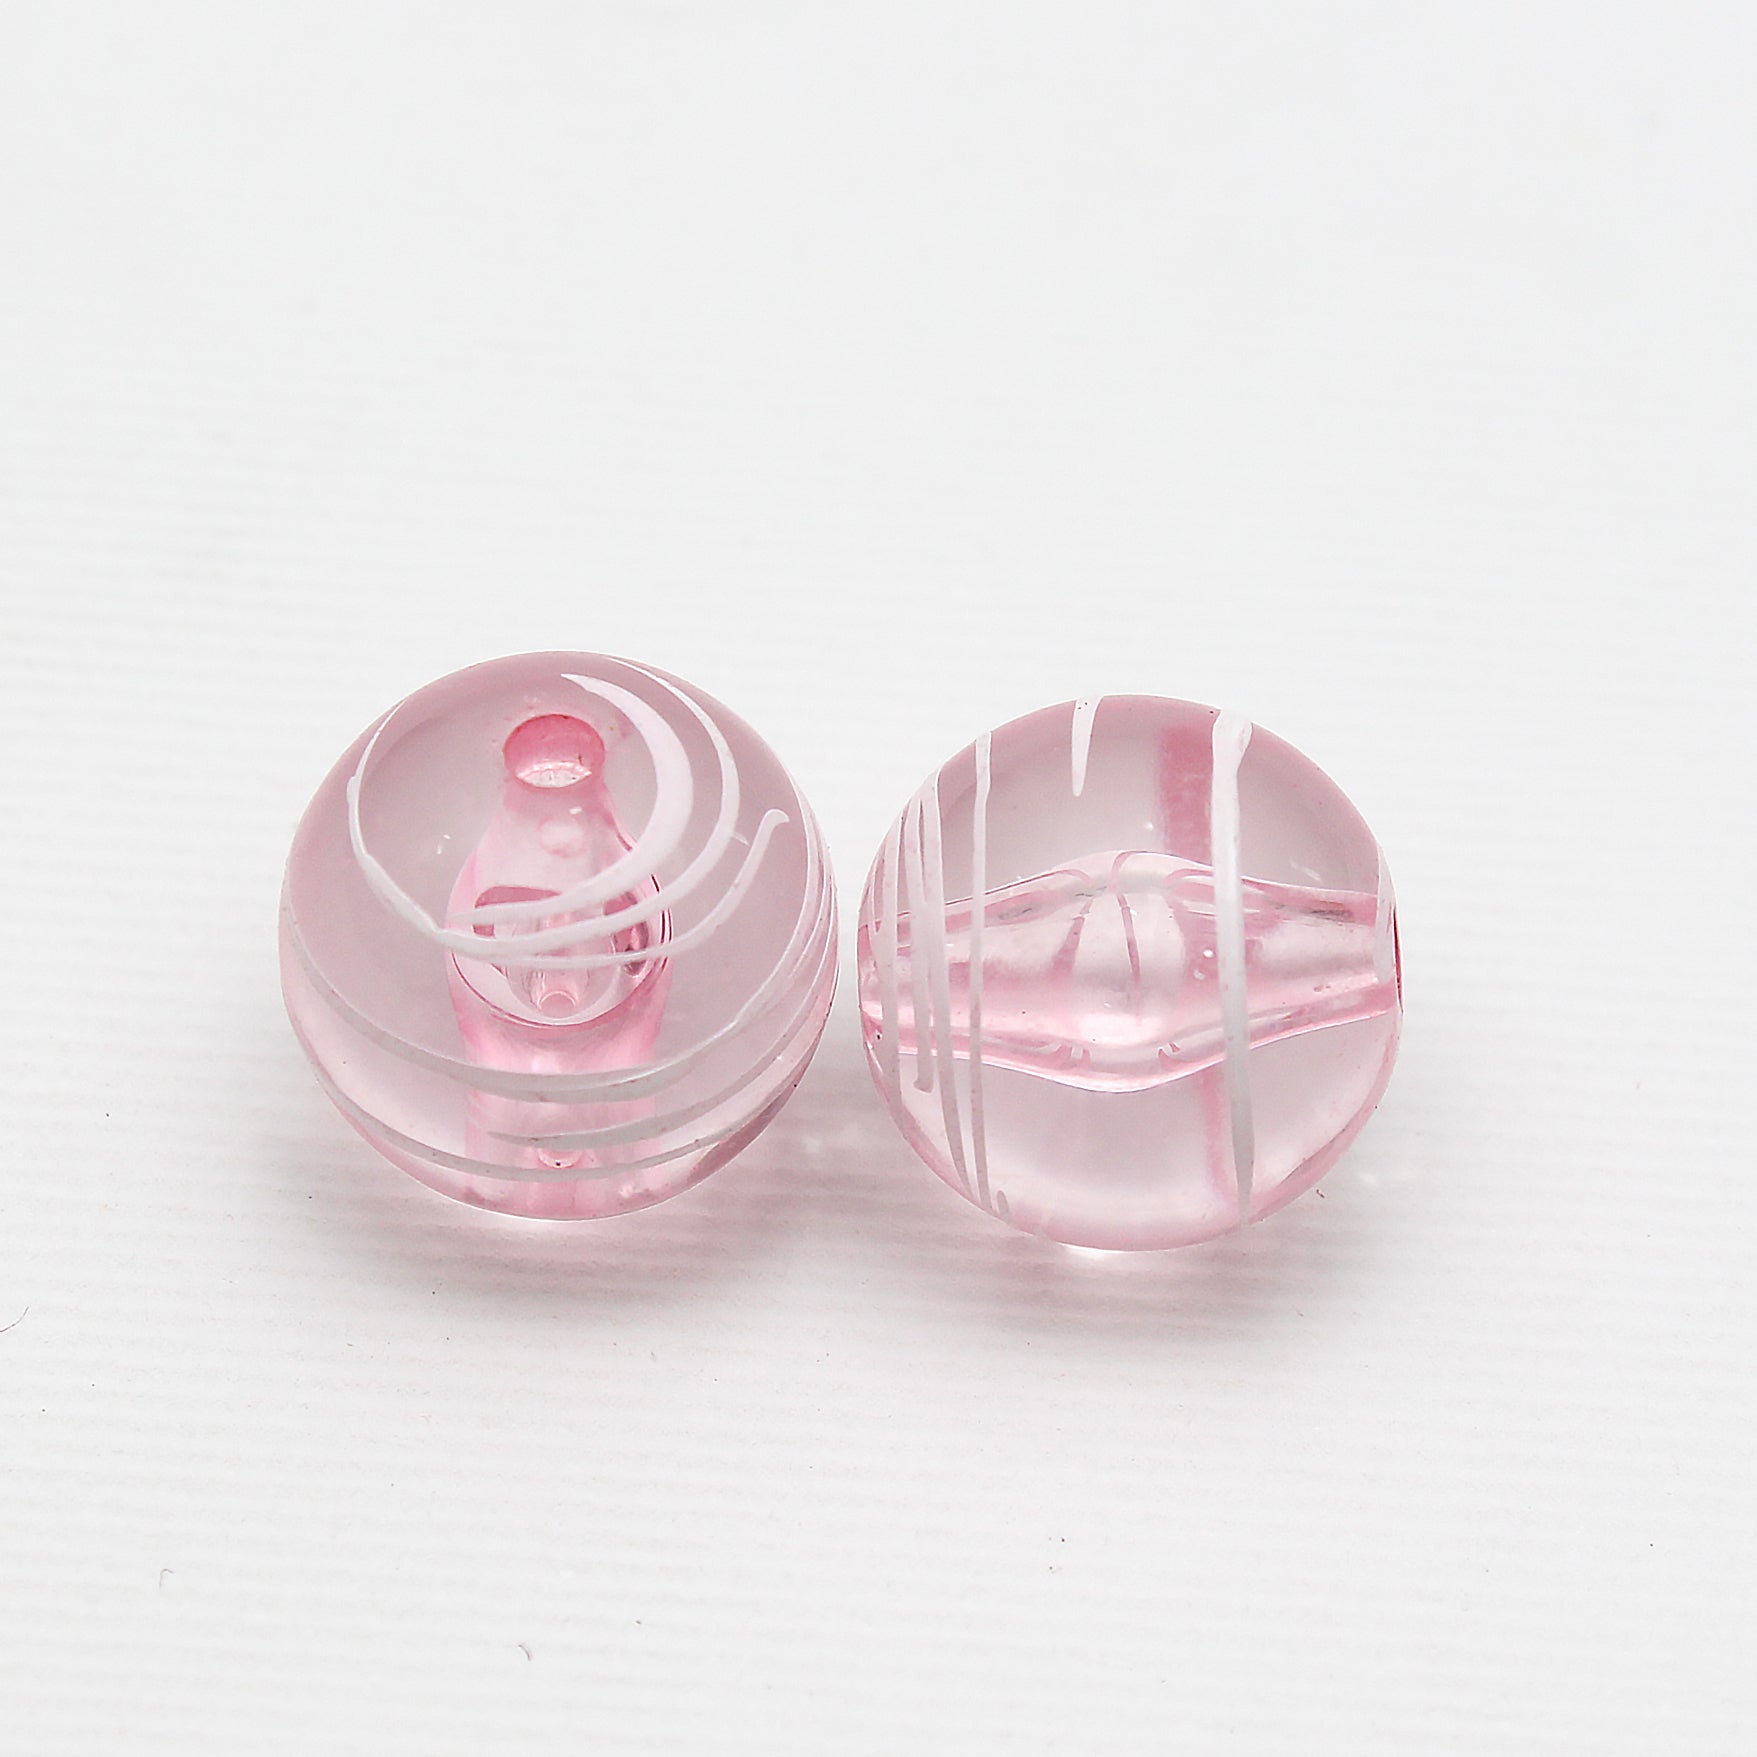 Beads Glassy Pink White Streaked Round 13Mm X 13Mm 30G Pb Ib